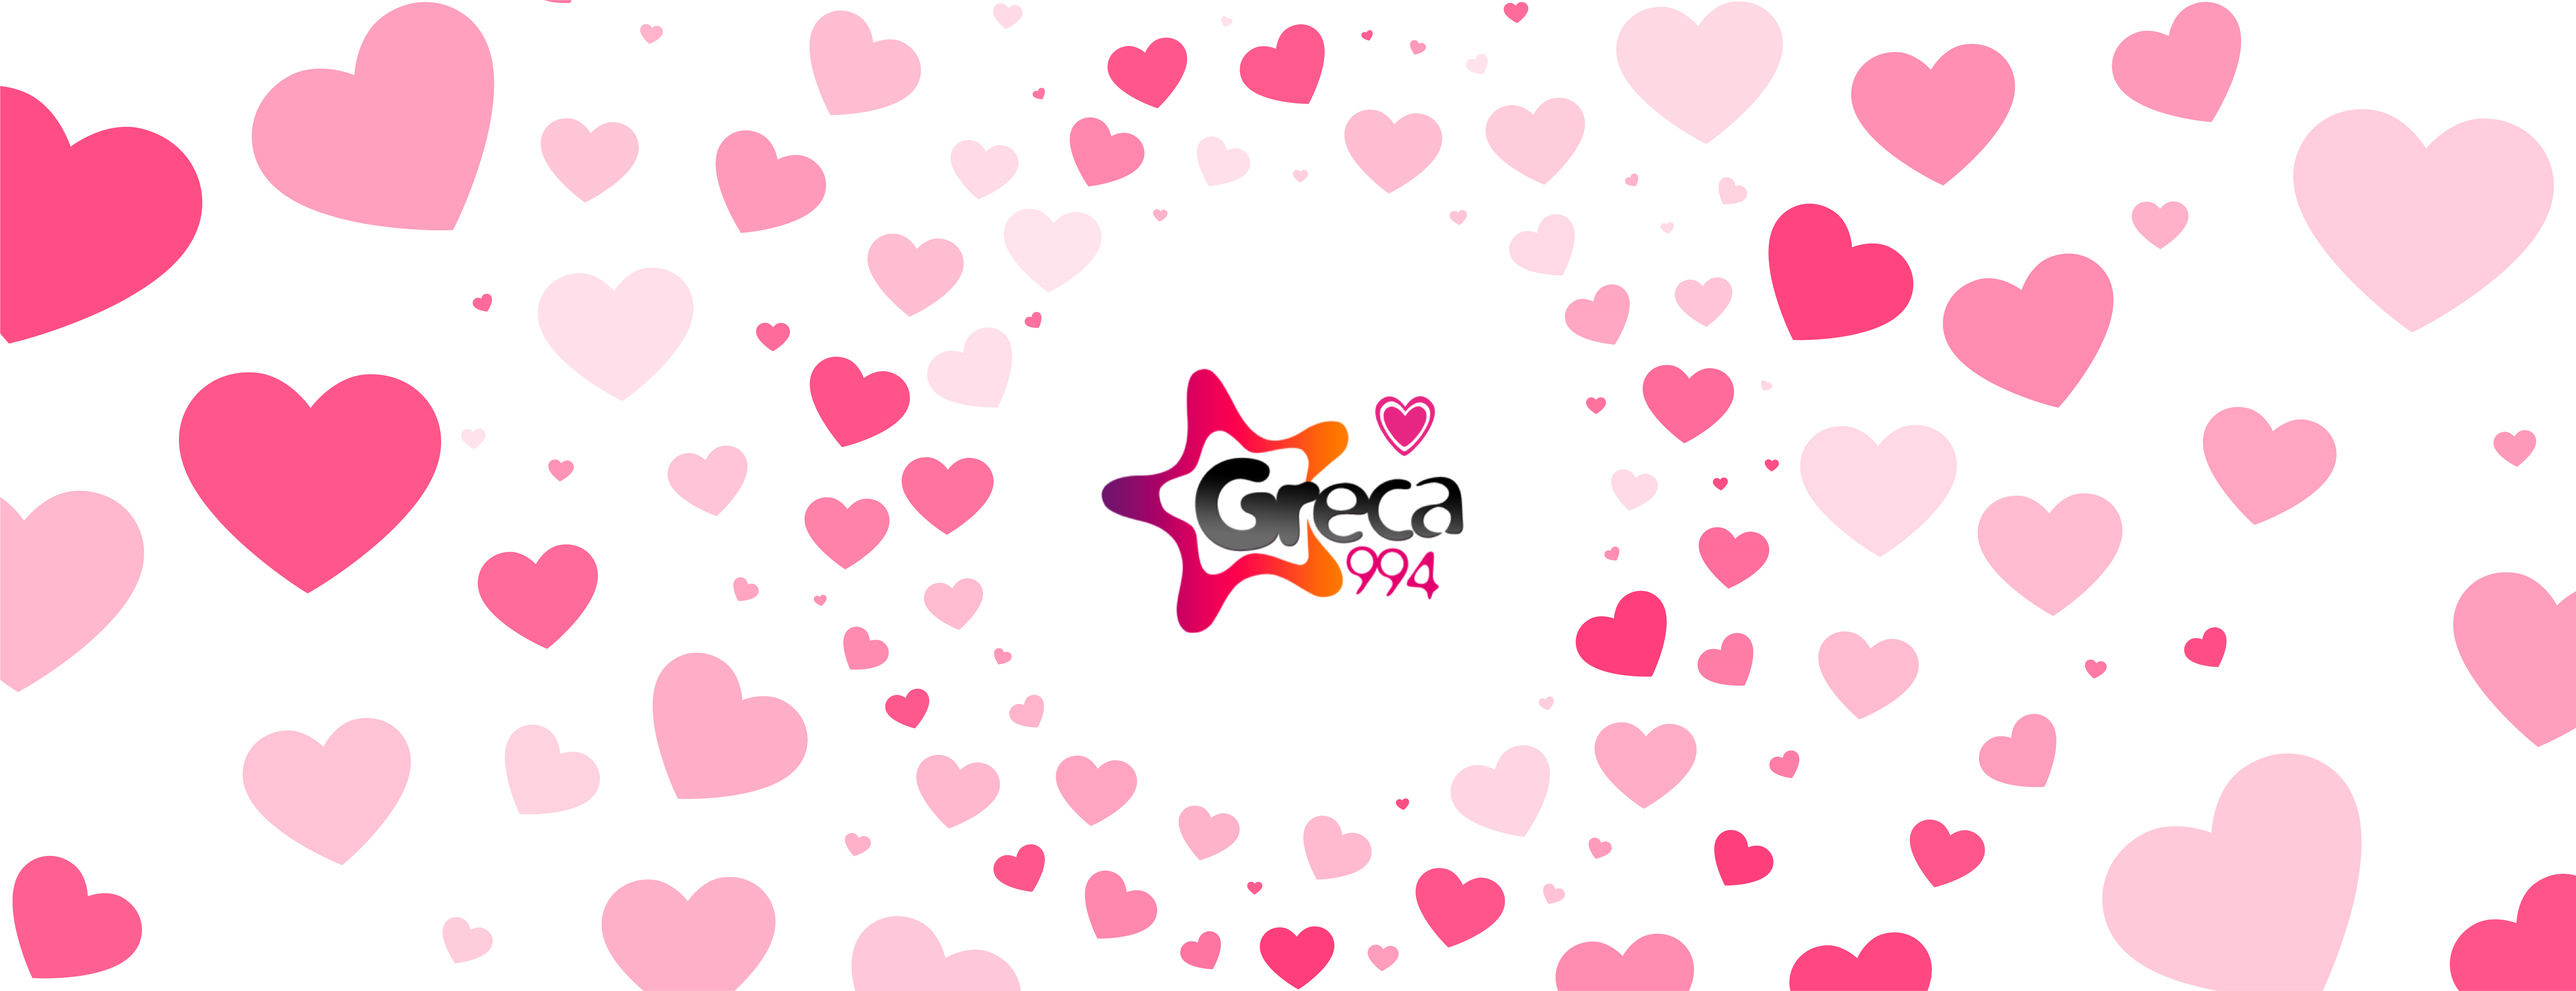 Ο Greca 99,4 γιορτάζει τον Έρωτα και φτιάχνει ατμόσφαιρα..